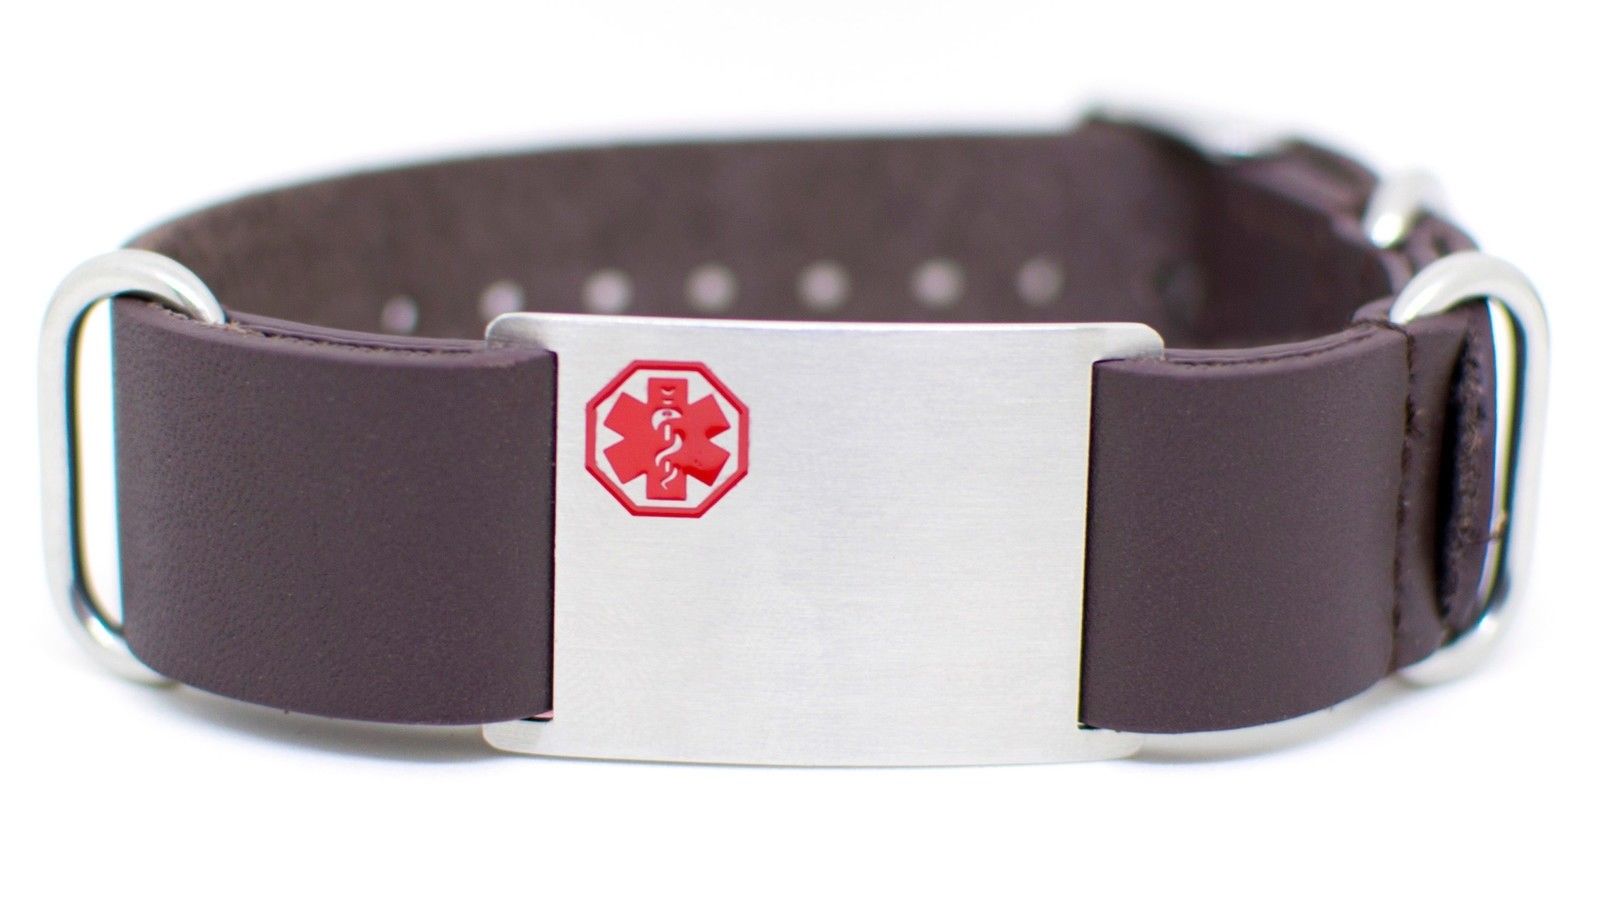 Engravable DOC TOCK Genuine Leather 18mm Medical Alert ID Band Bracelet - US Jewels